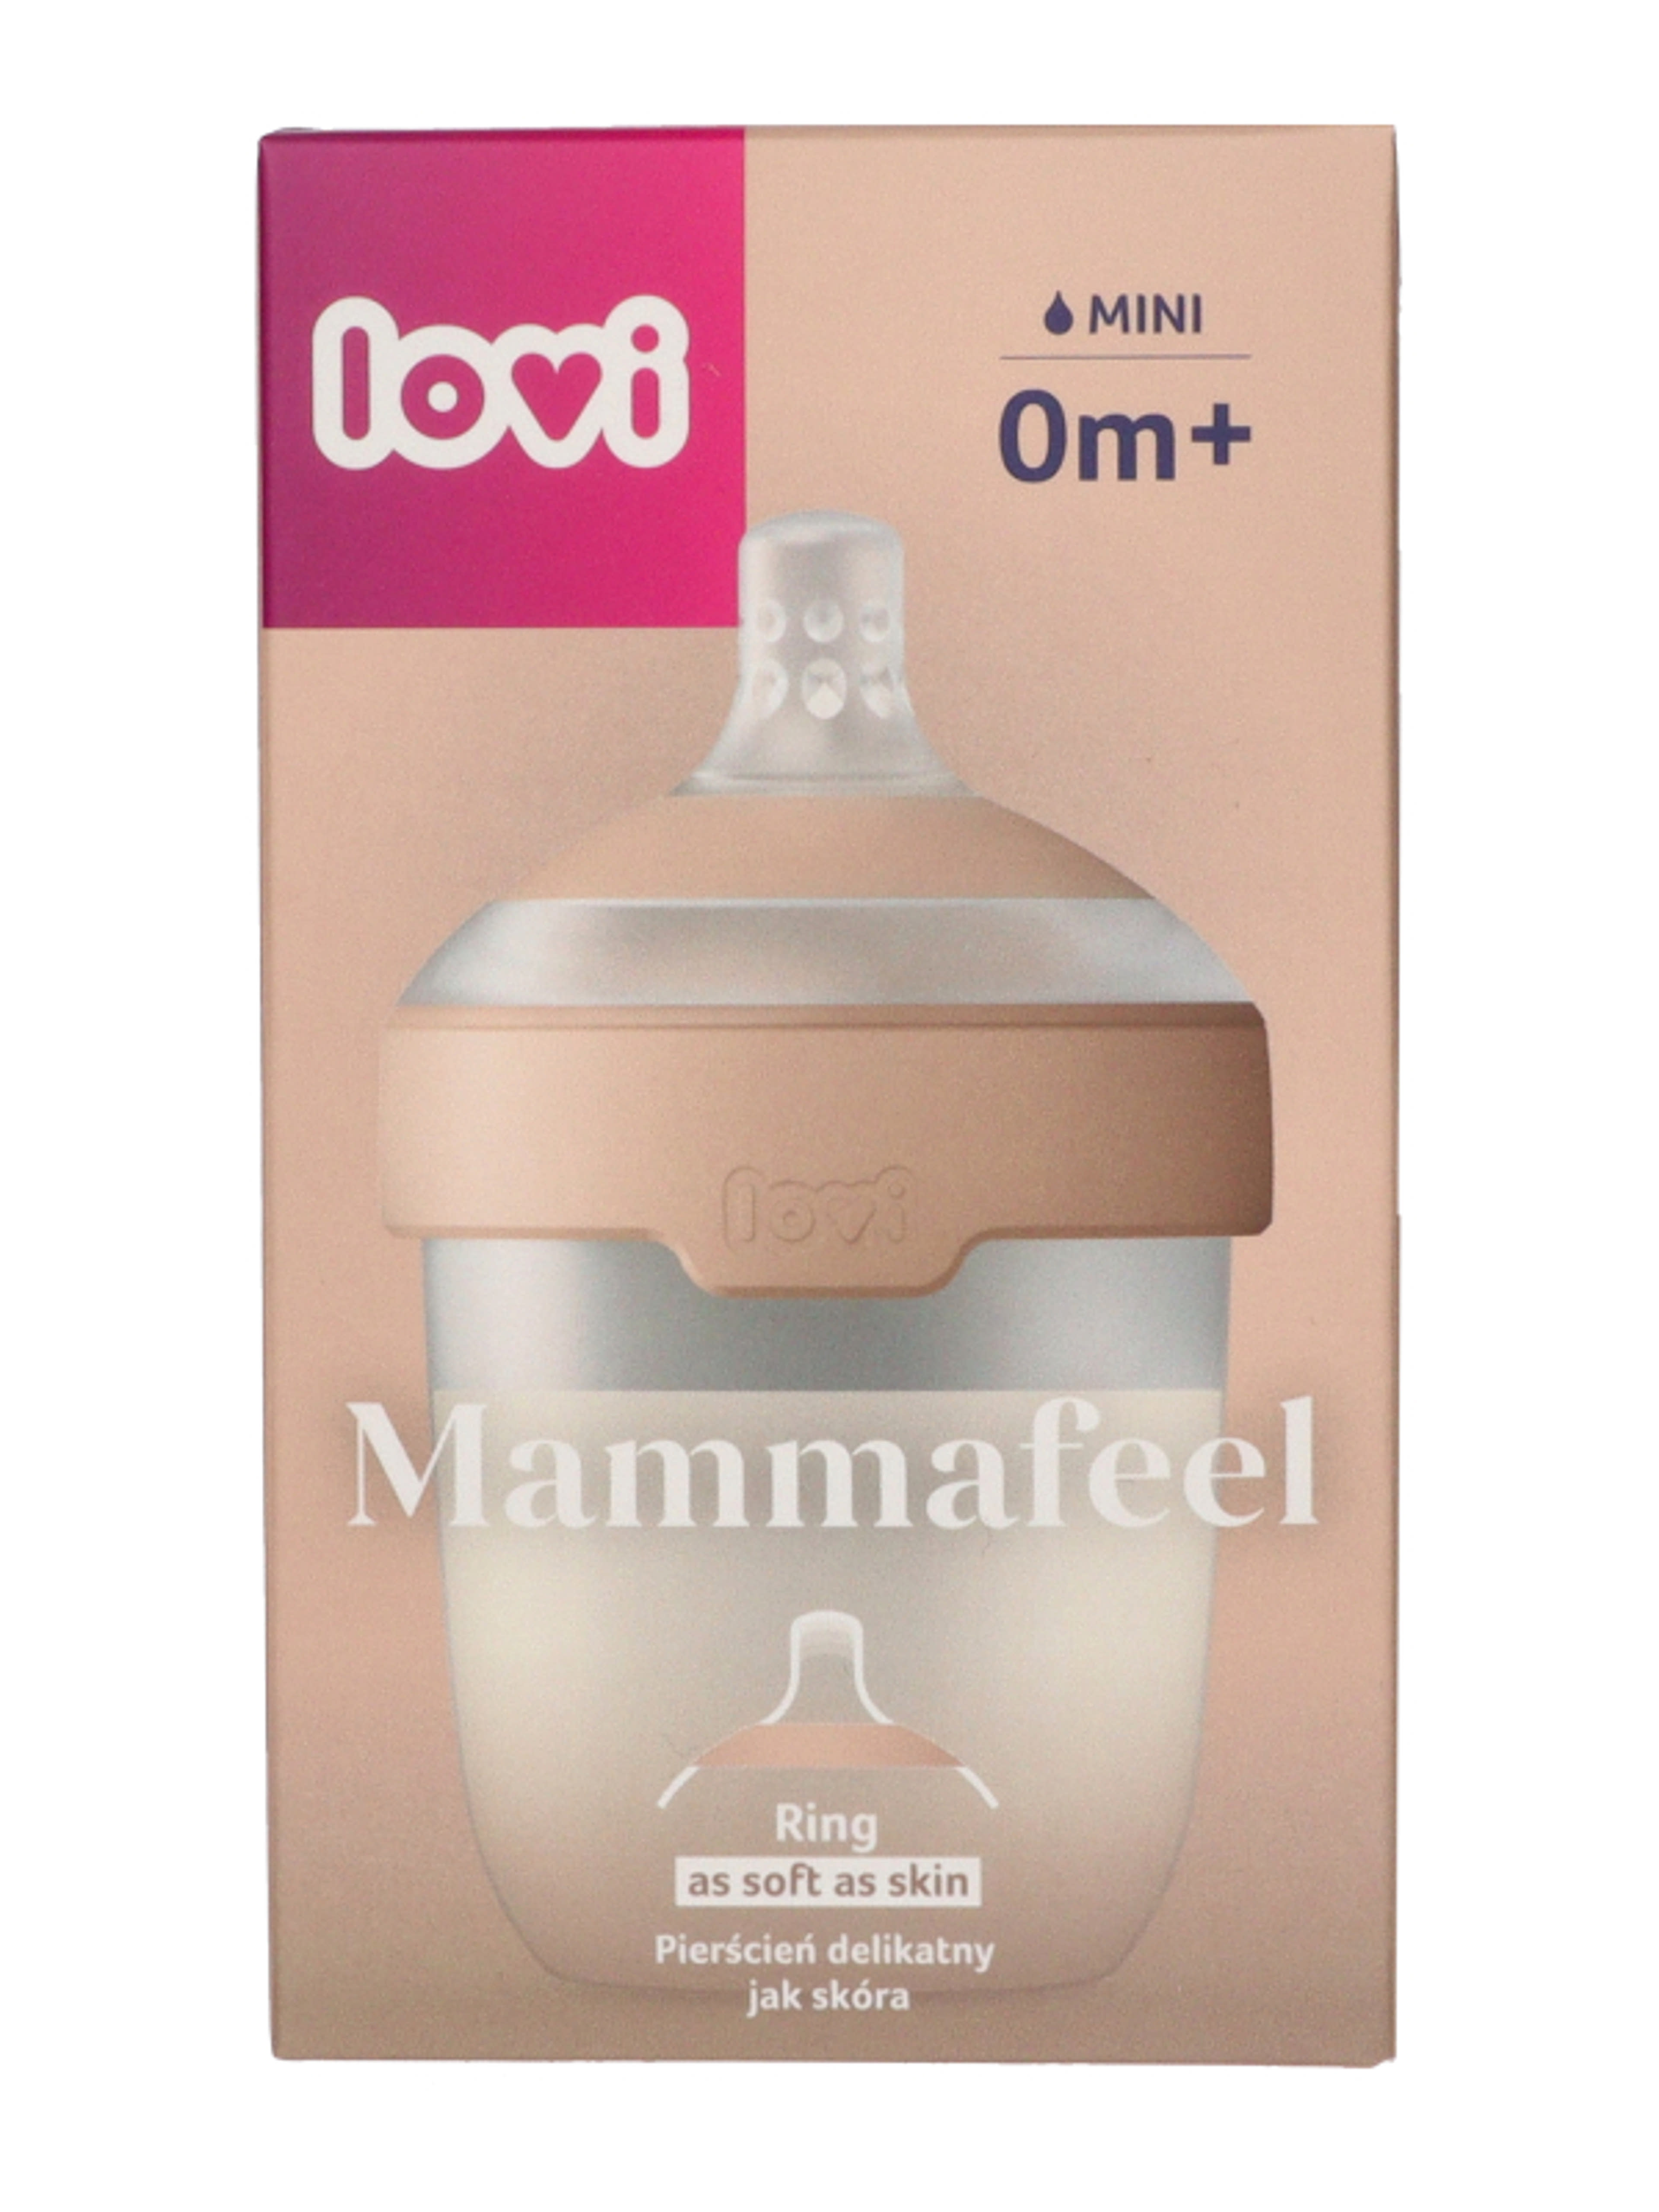 Lovi Mammafeel cumisüveg újszülött kortól 150 ml - 1 db-1